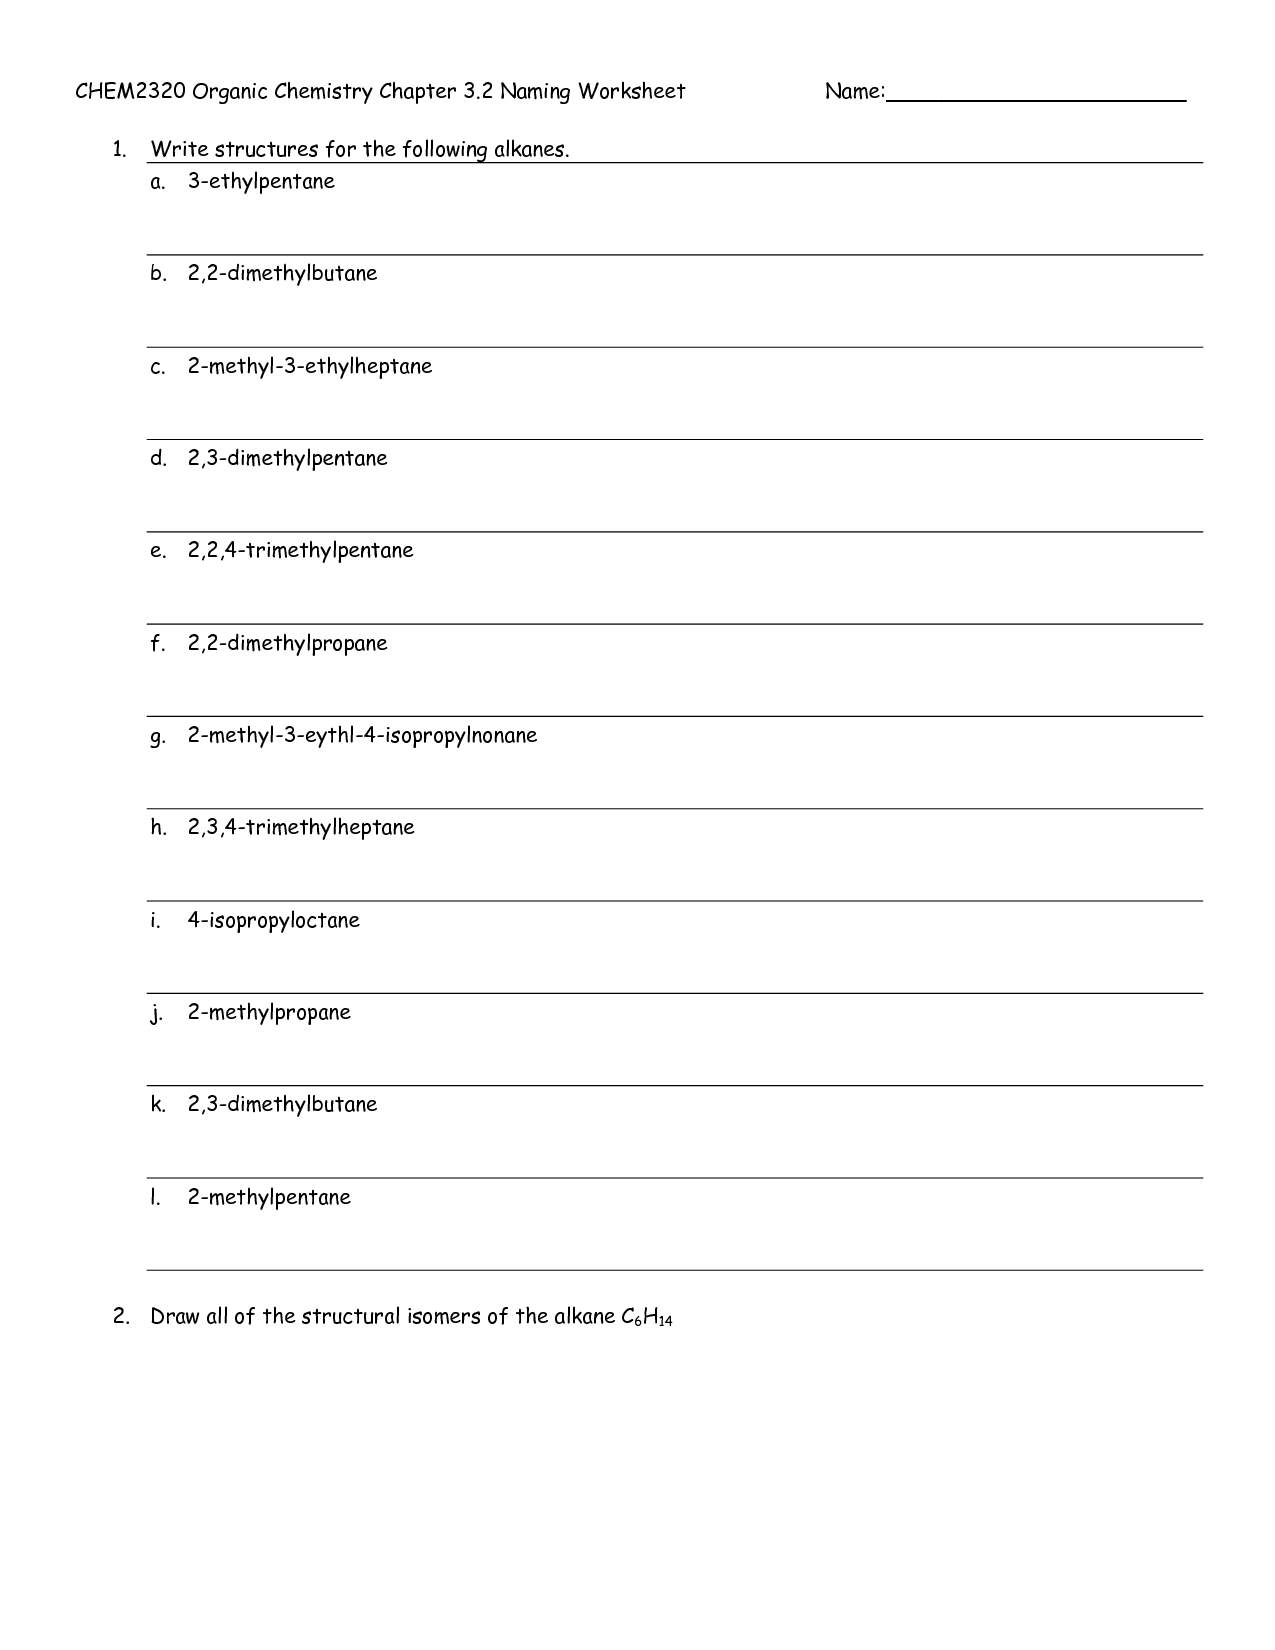 Organic Chemistry Nomenclature Worksheet Image